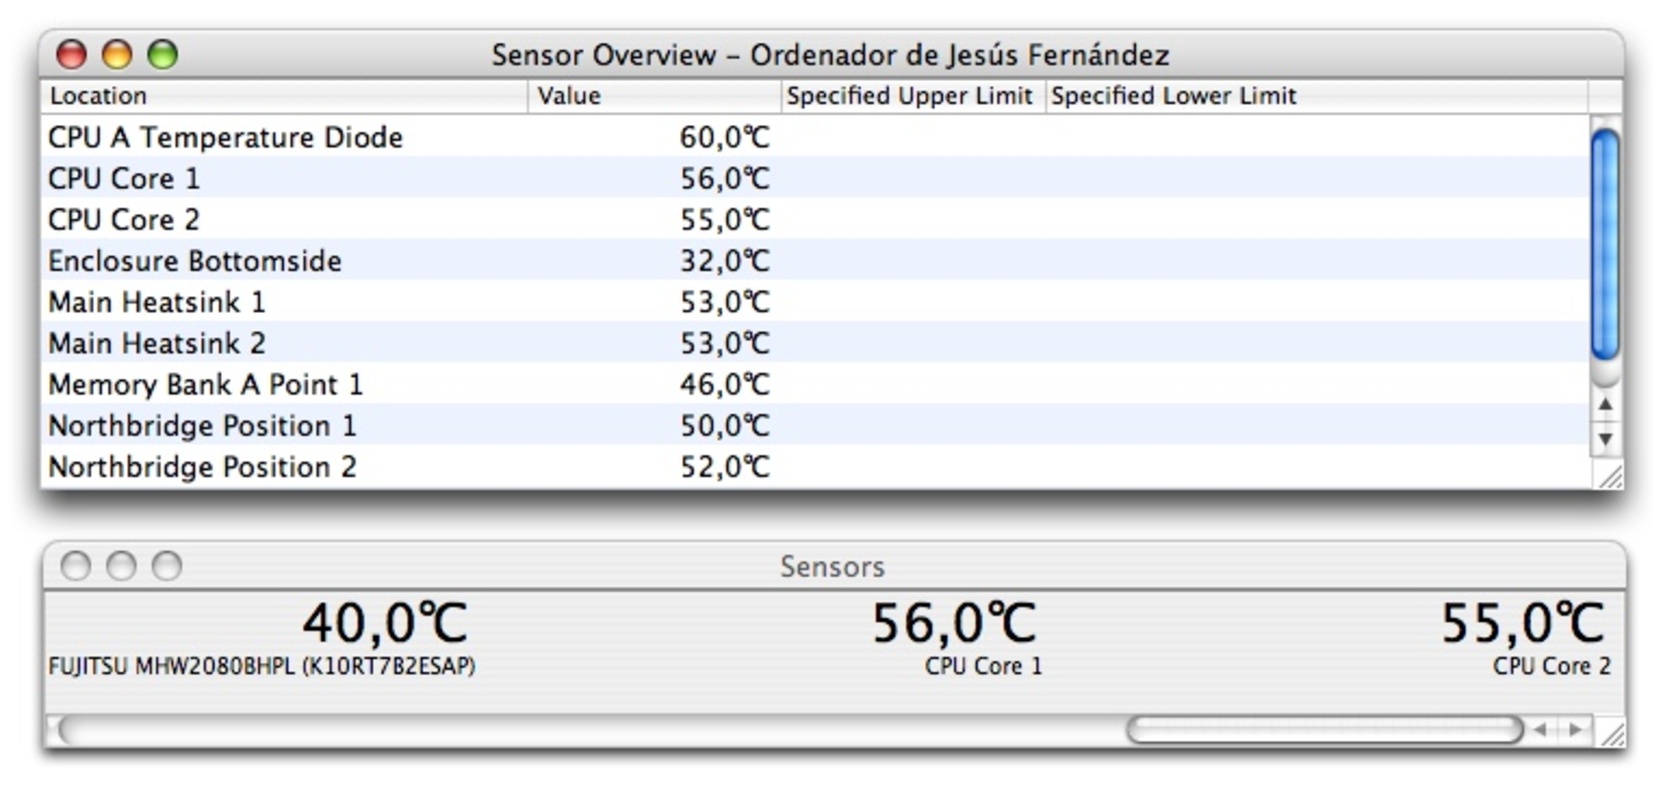 Temperature Monitor 4.7 feature